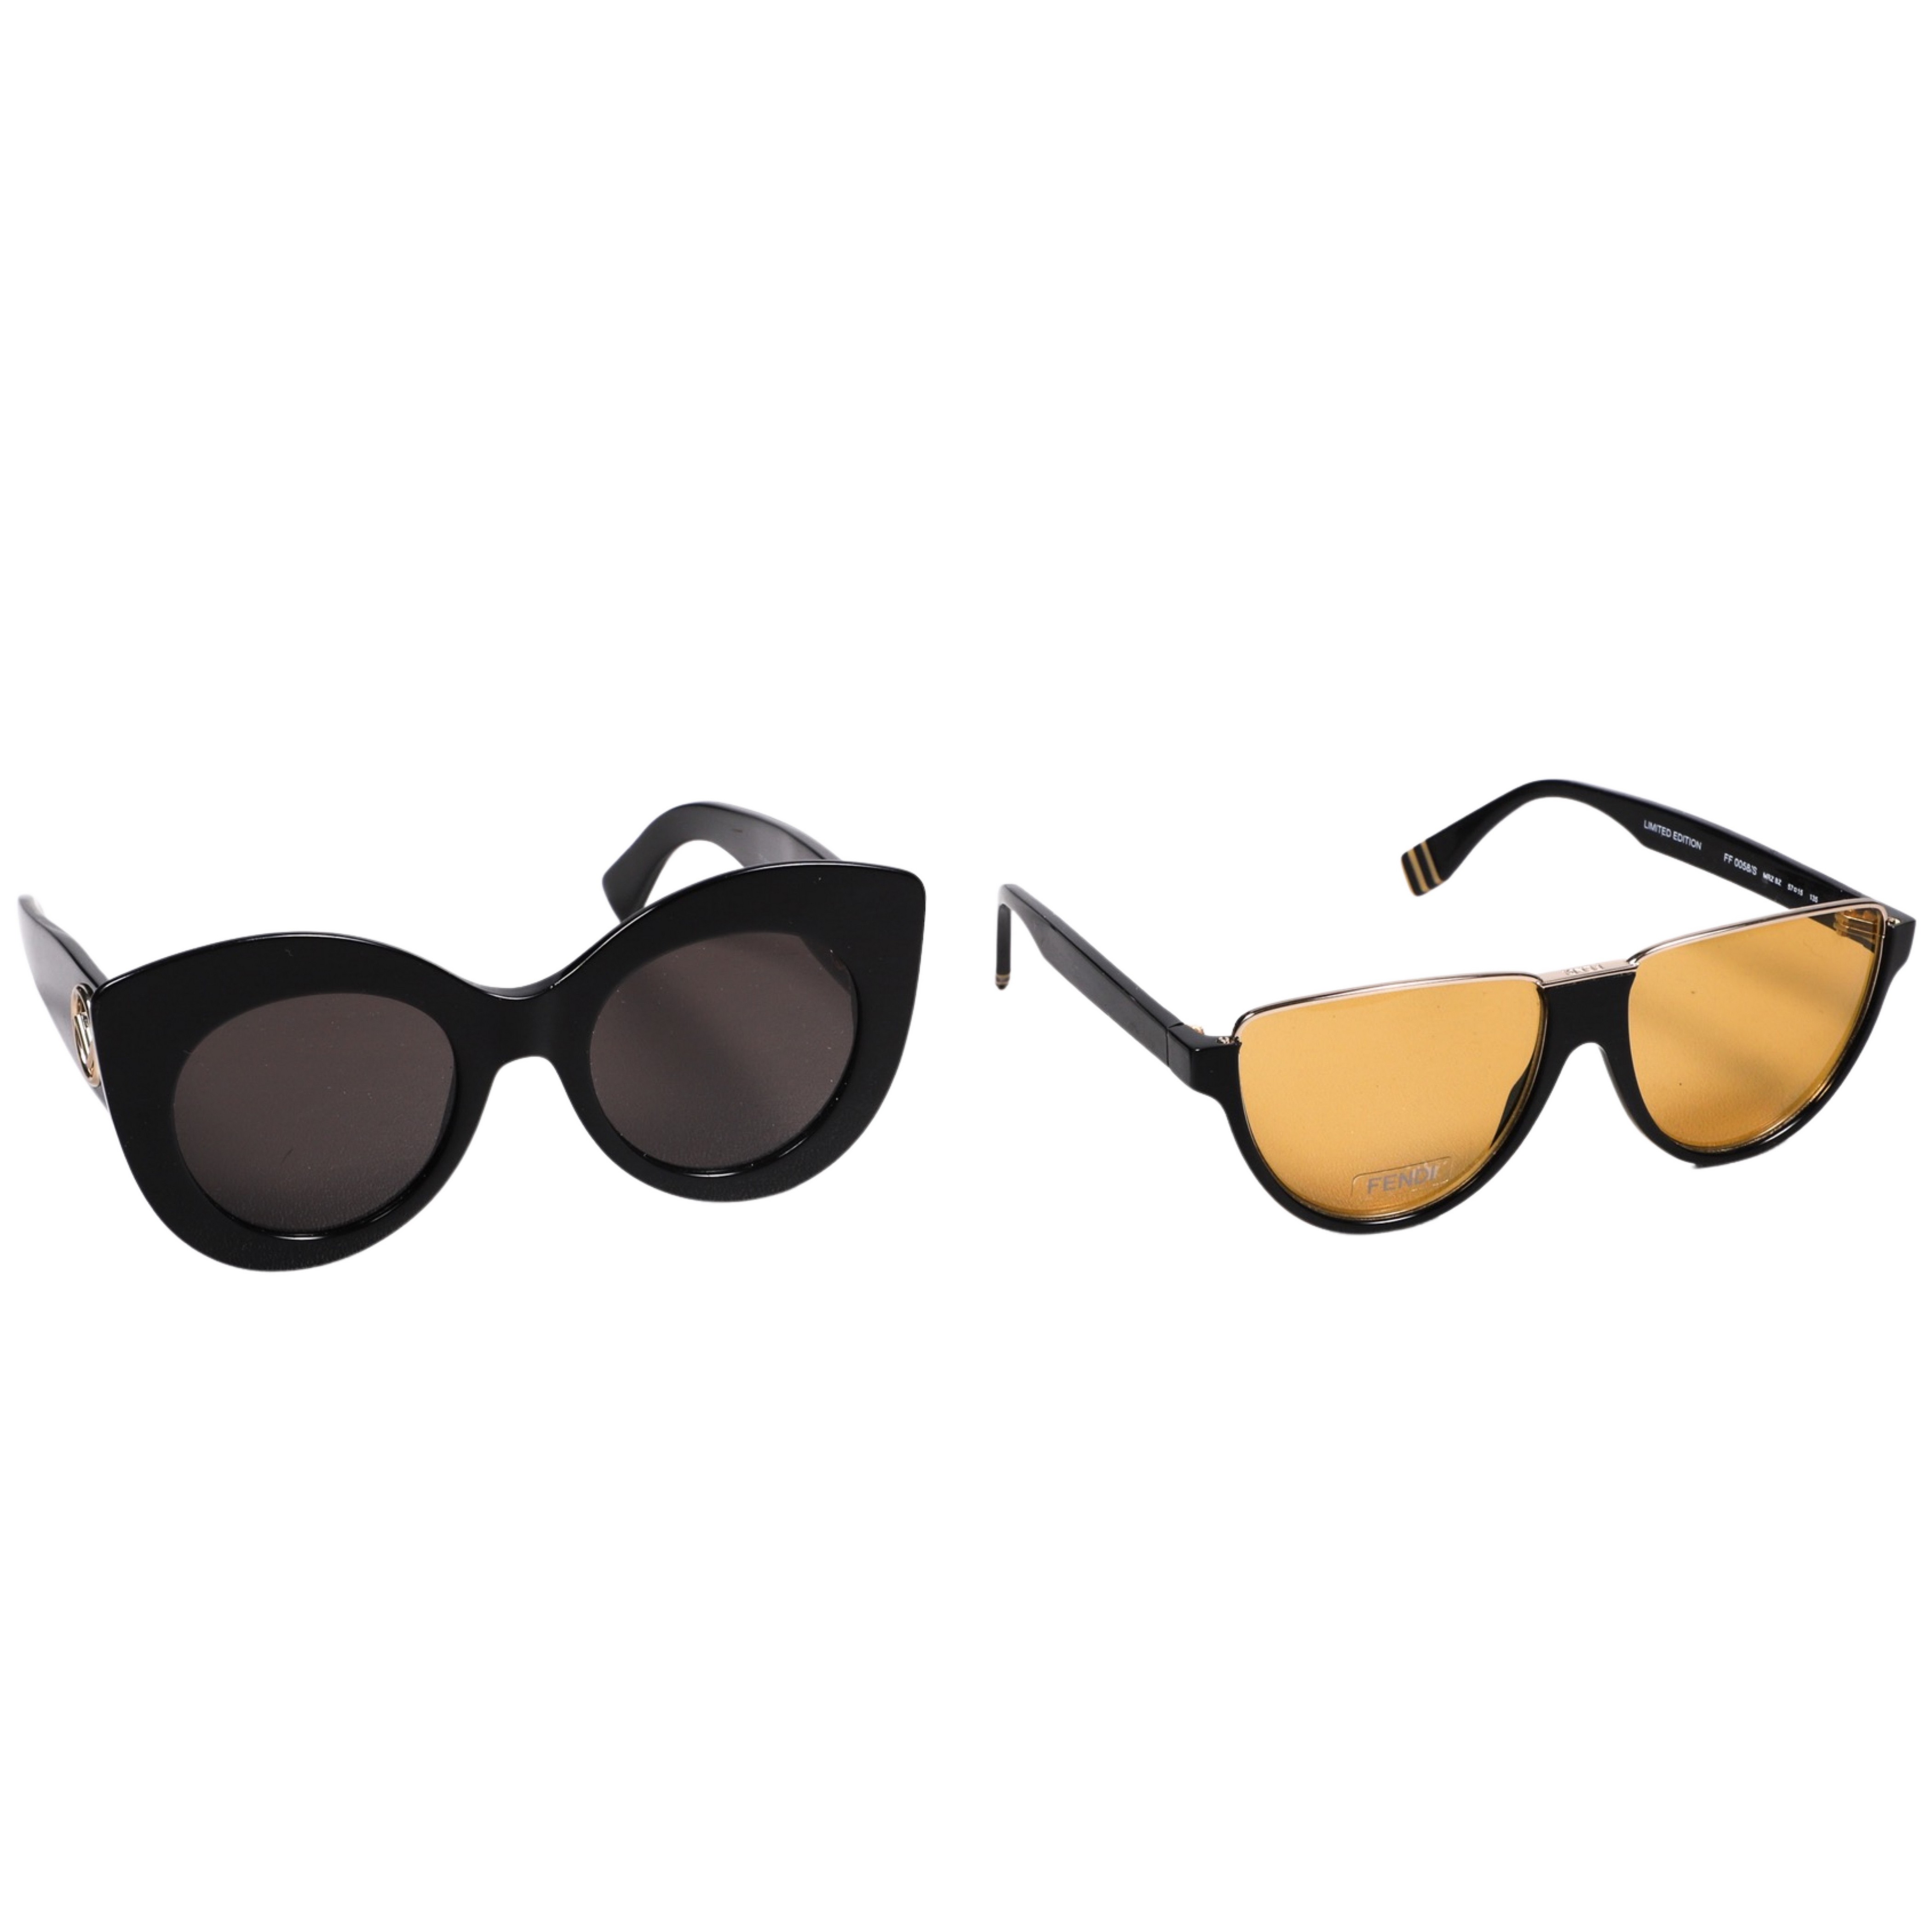 (2) Pair Fendi sunglasses,to include